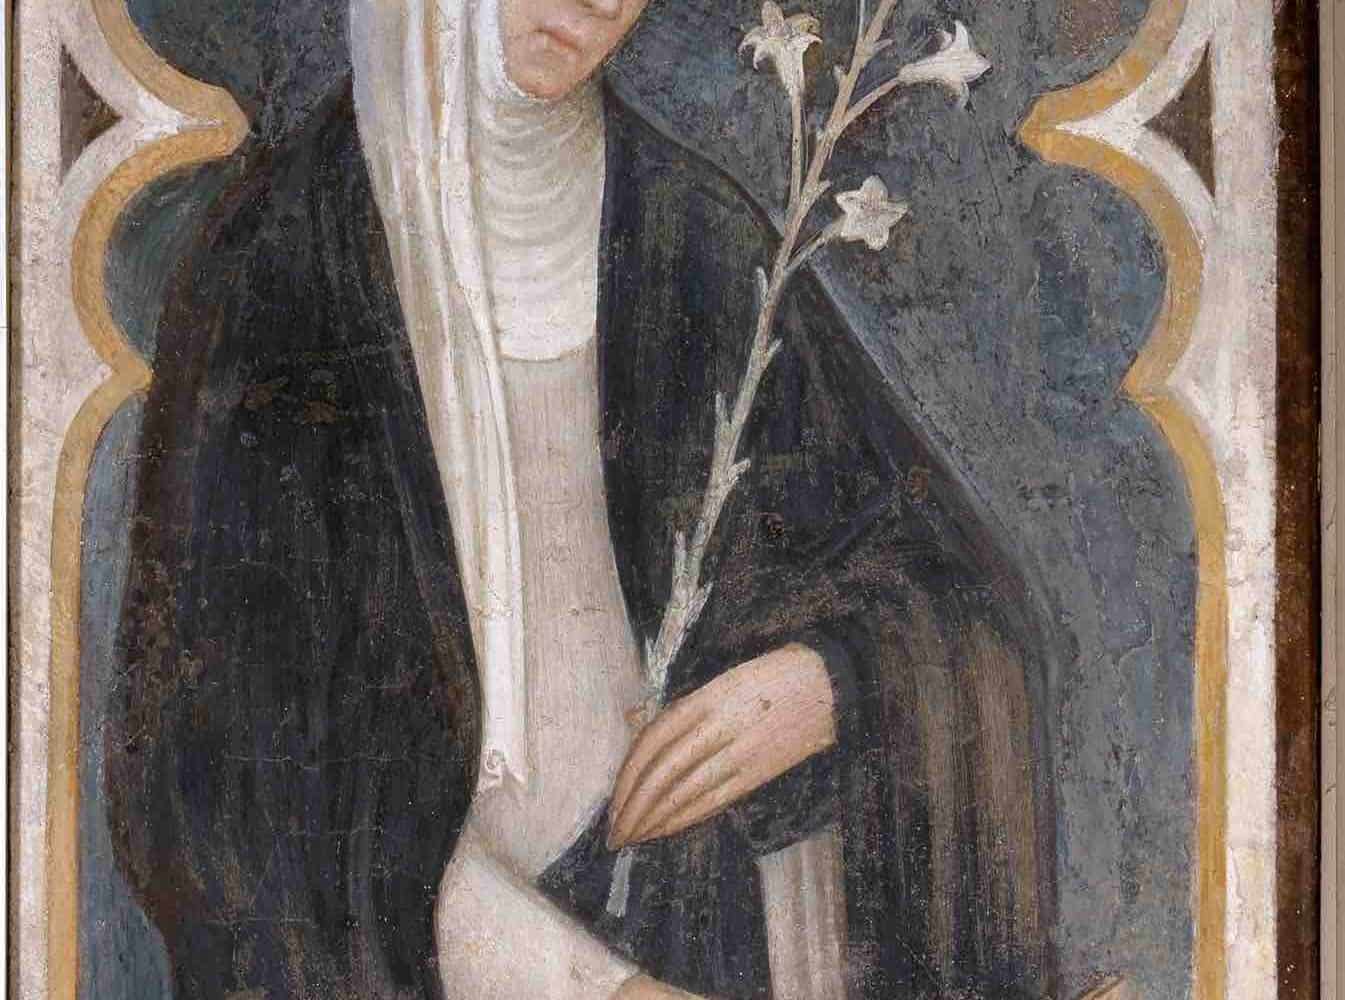 Catherine of Siena